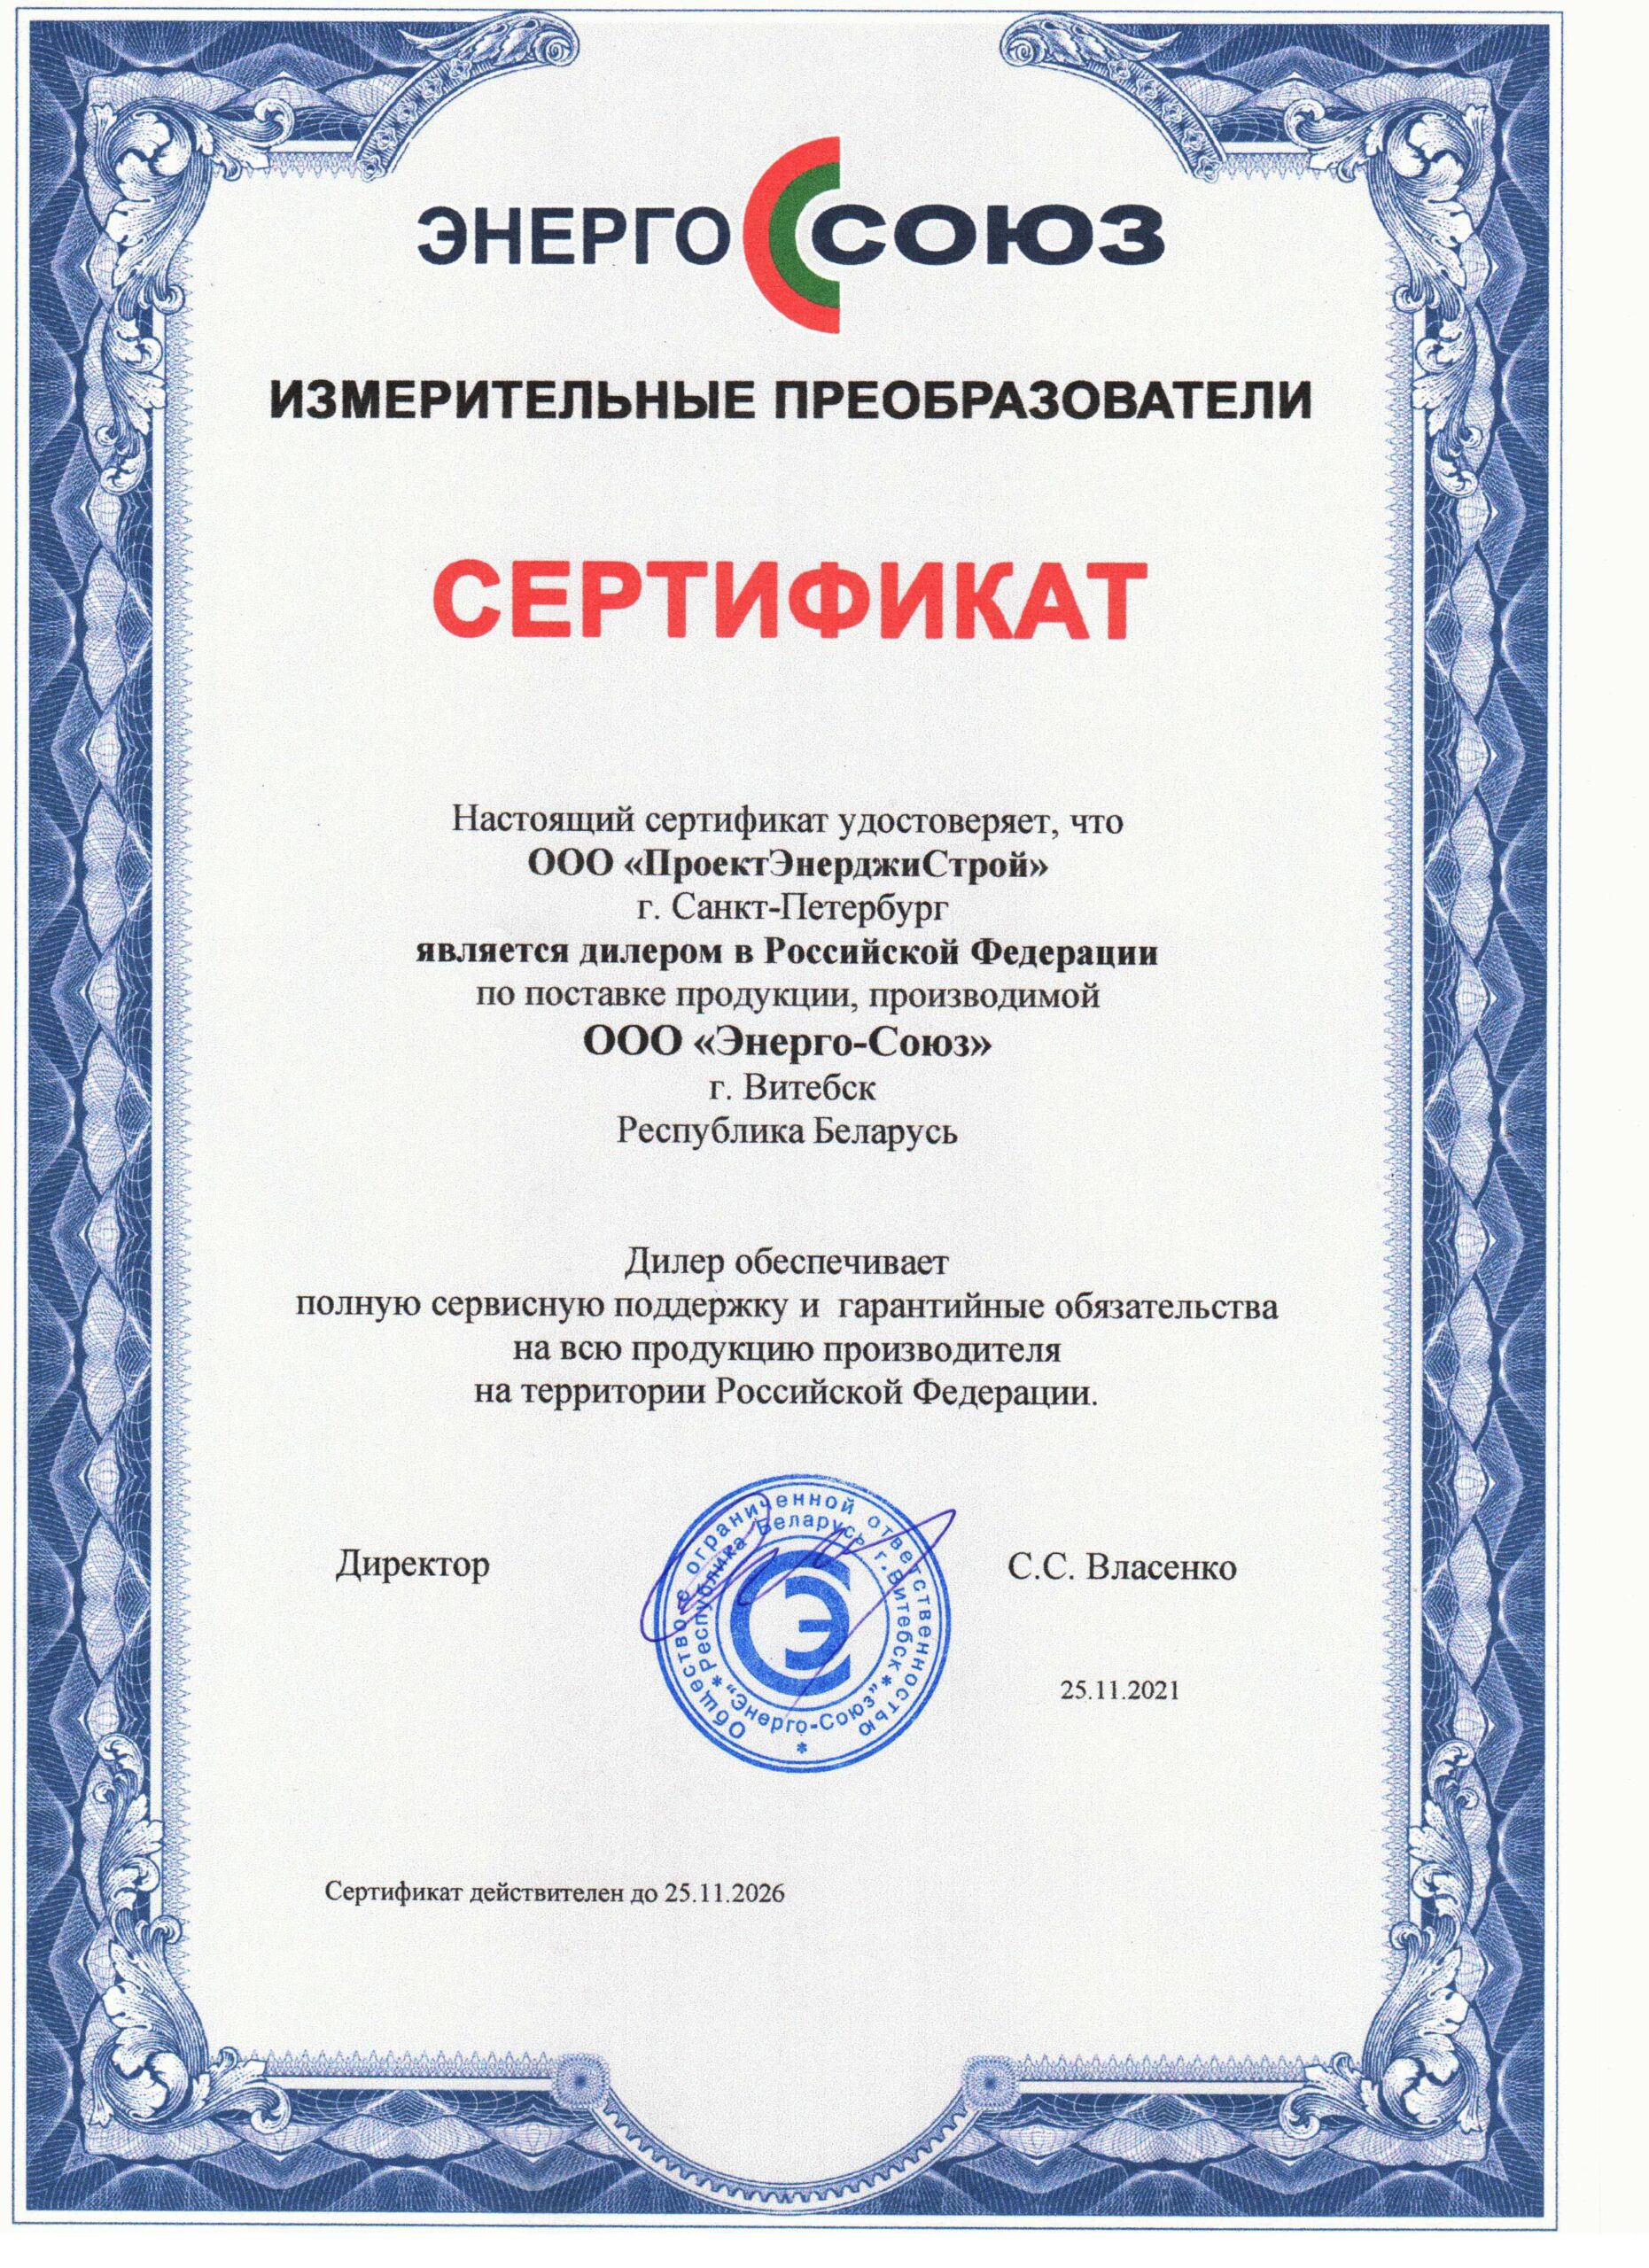 Сертификат от ООО "Энерго-Союз"